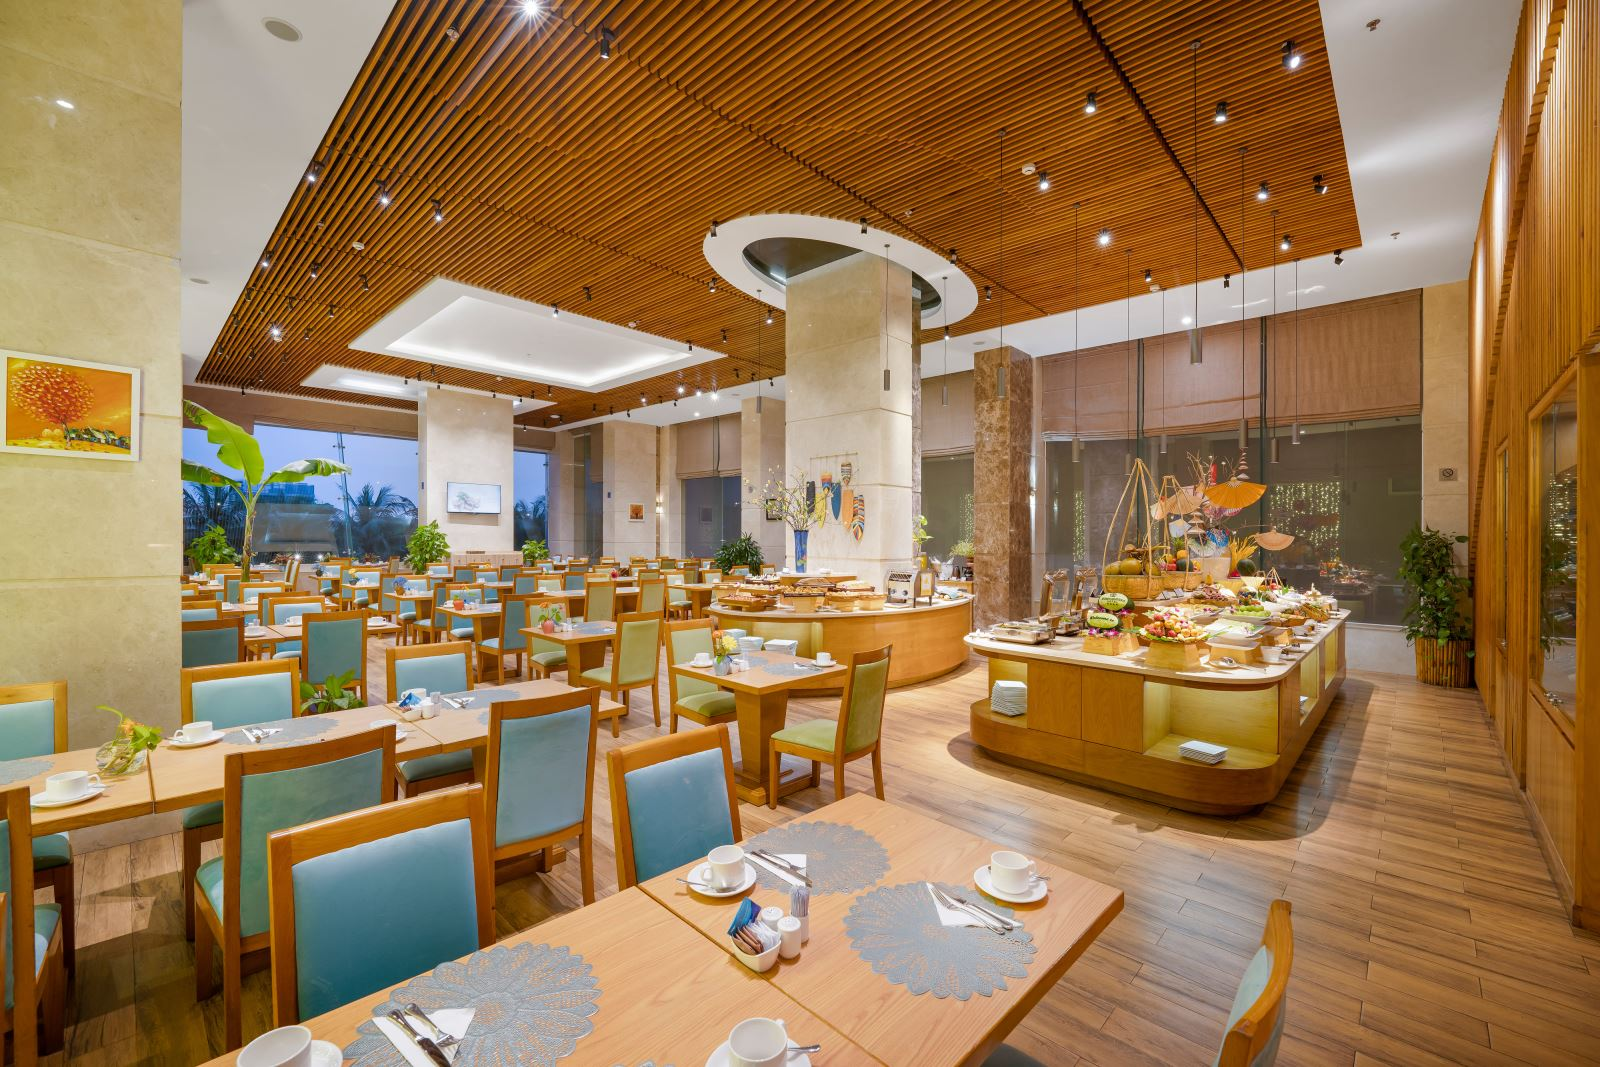 Nhà hàng Honolulu phục vụ bữa sáng, trưa và tối với thực đơn Âu, Á và các món ăn truyền thống của Việt Nam